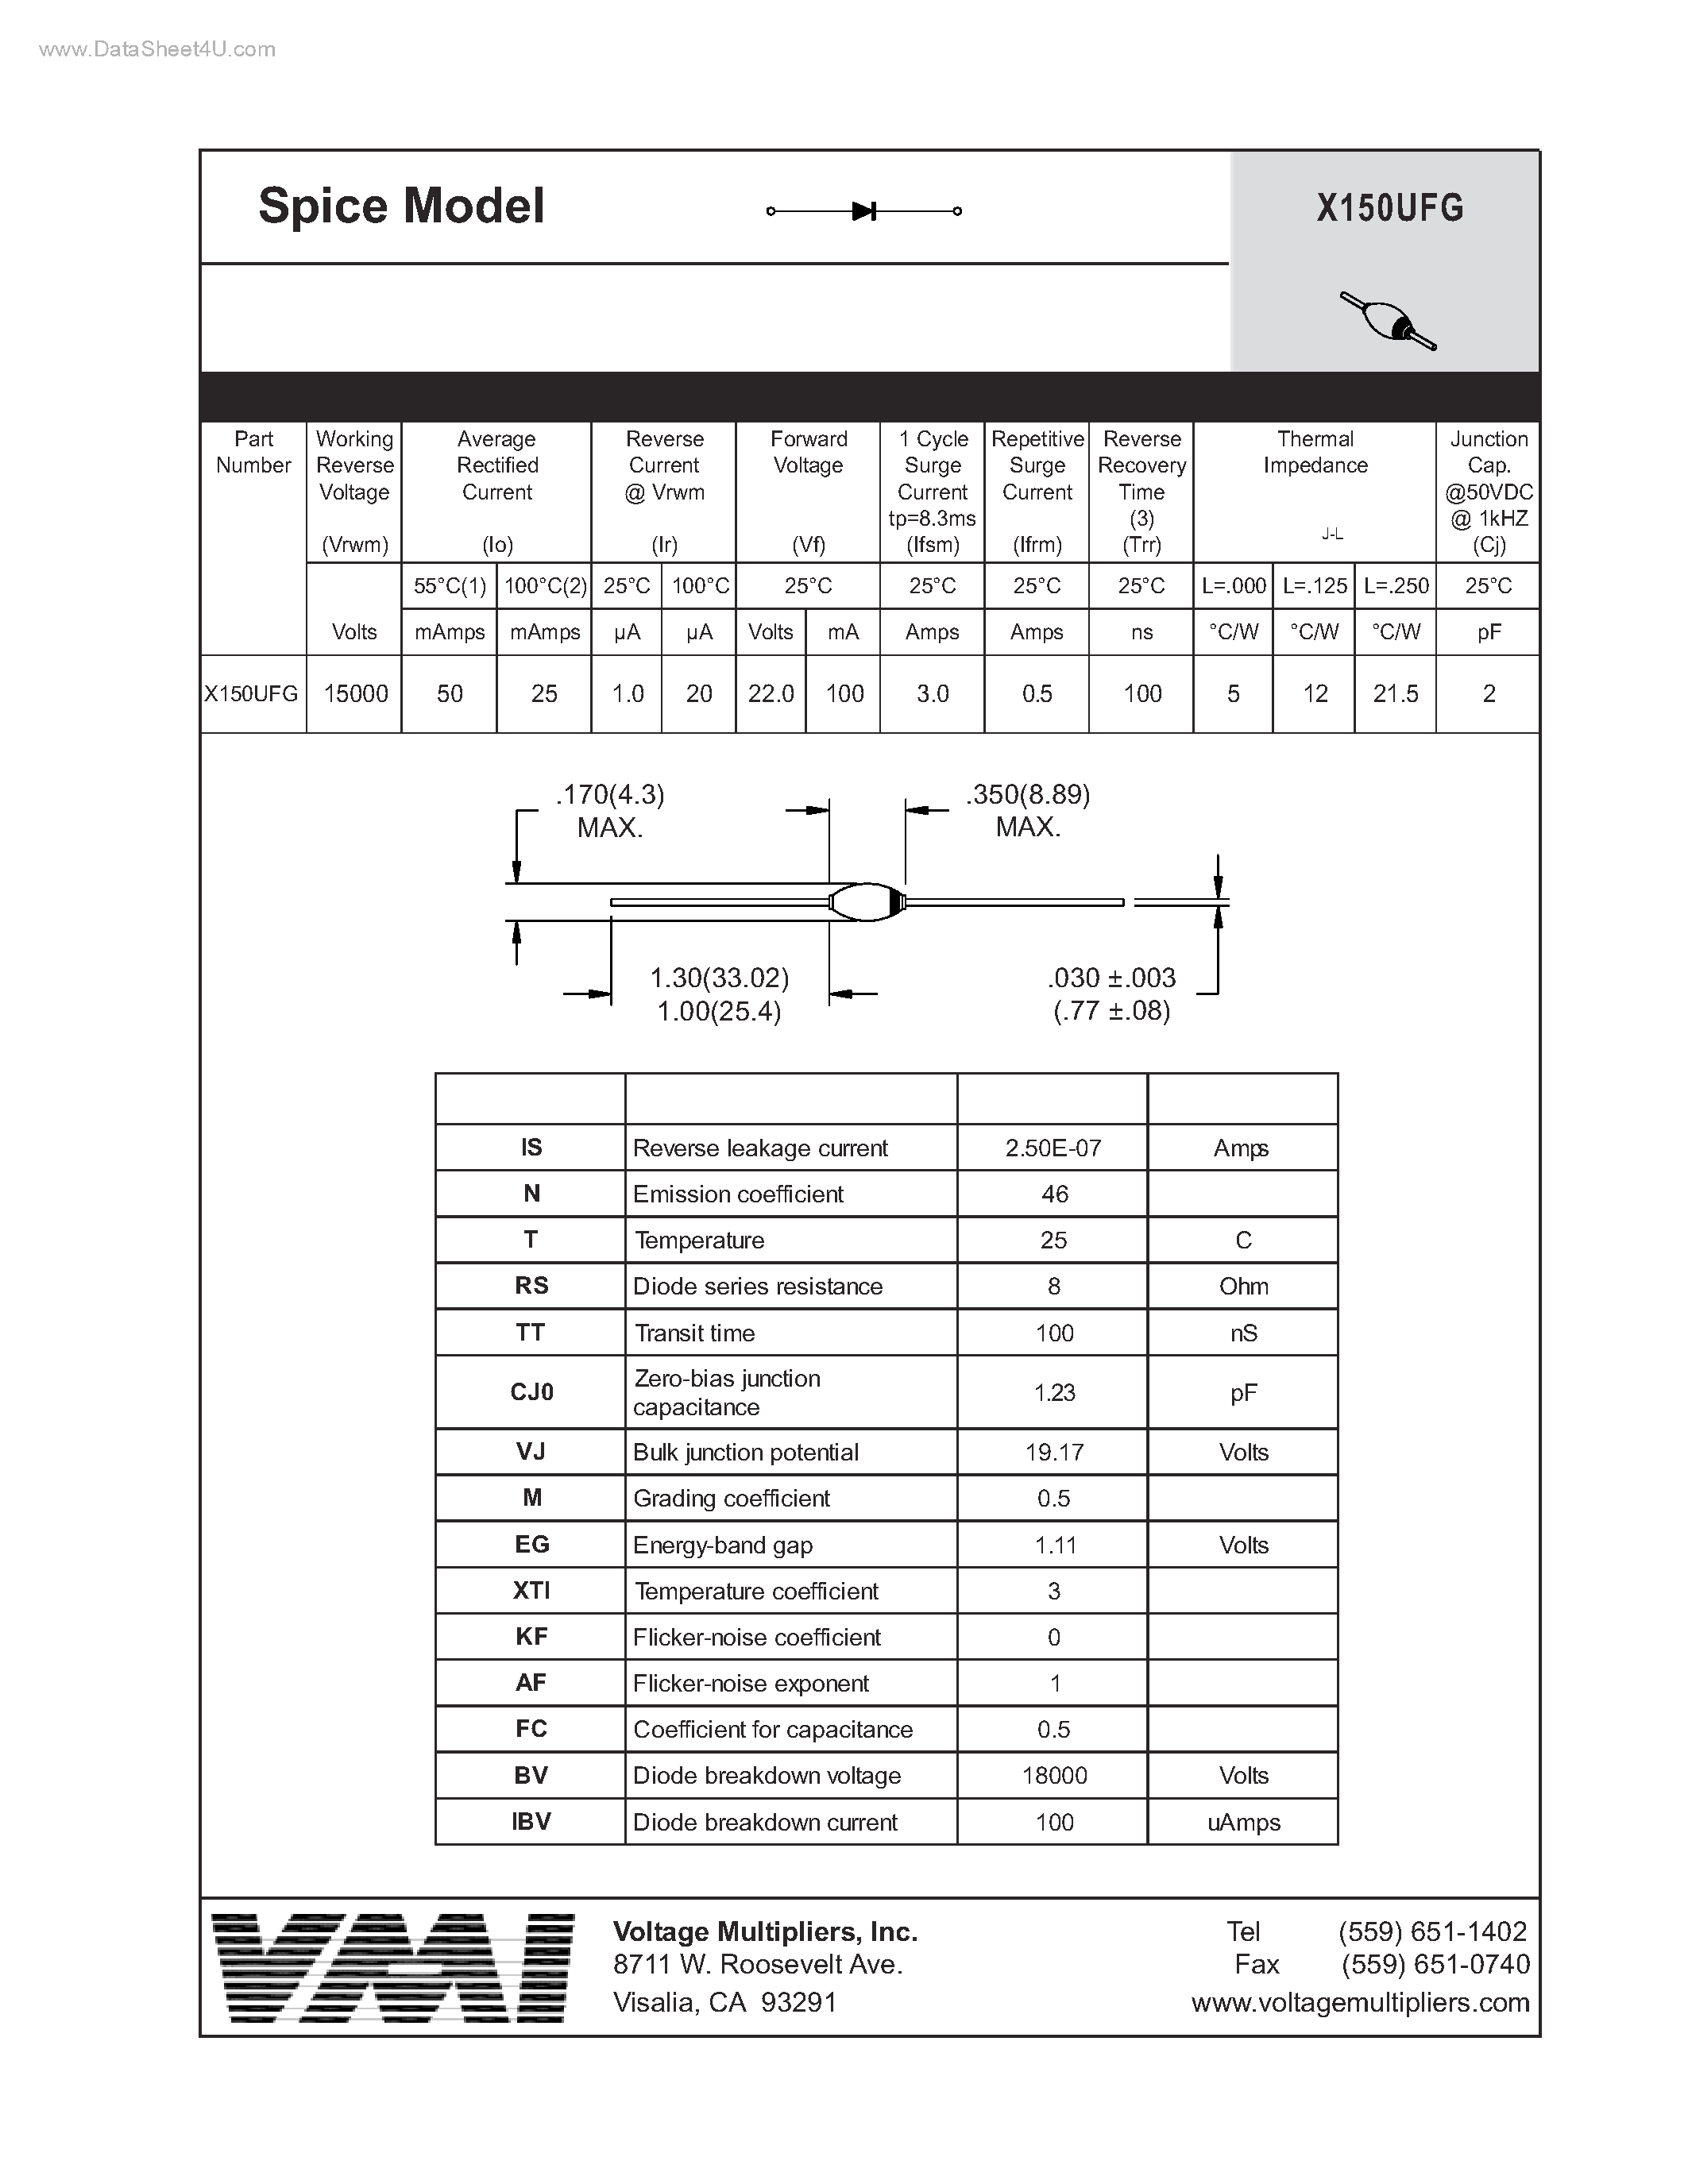 Datasheet X150UFG - Spice Model page 1